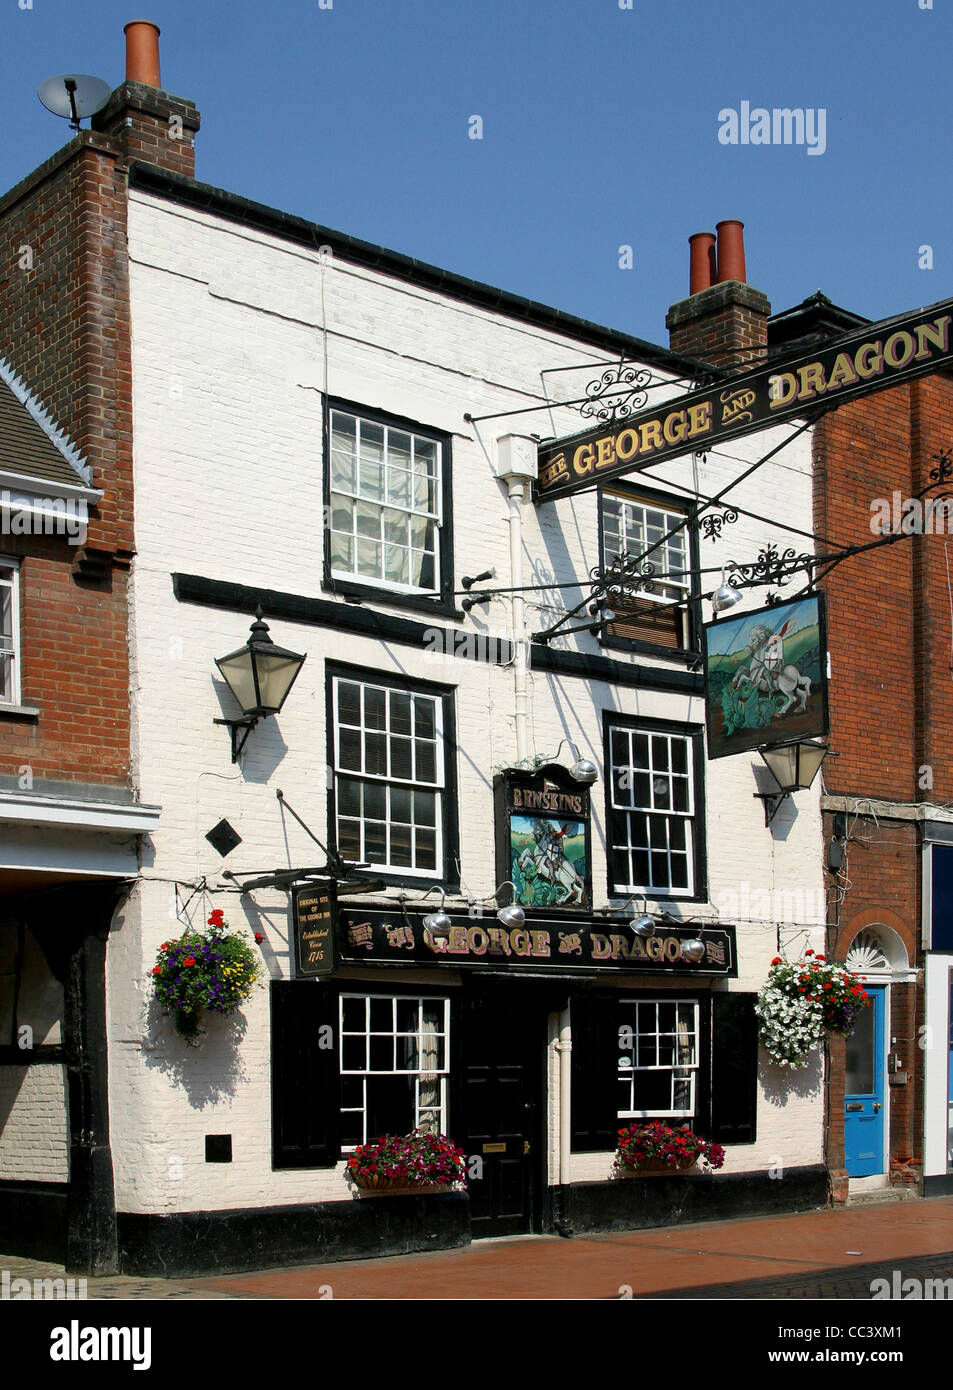 Le George & Dragon Pub dans le village de Chesham, Buckinghamshire, UK Banque D'Images